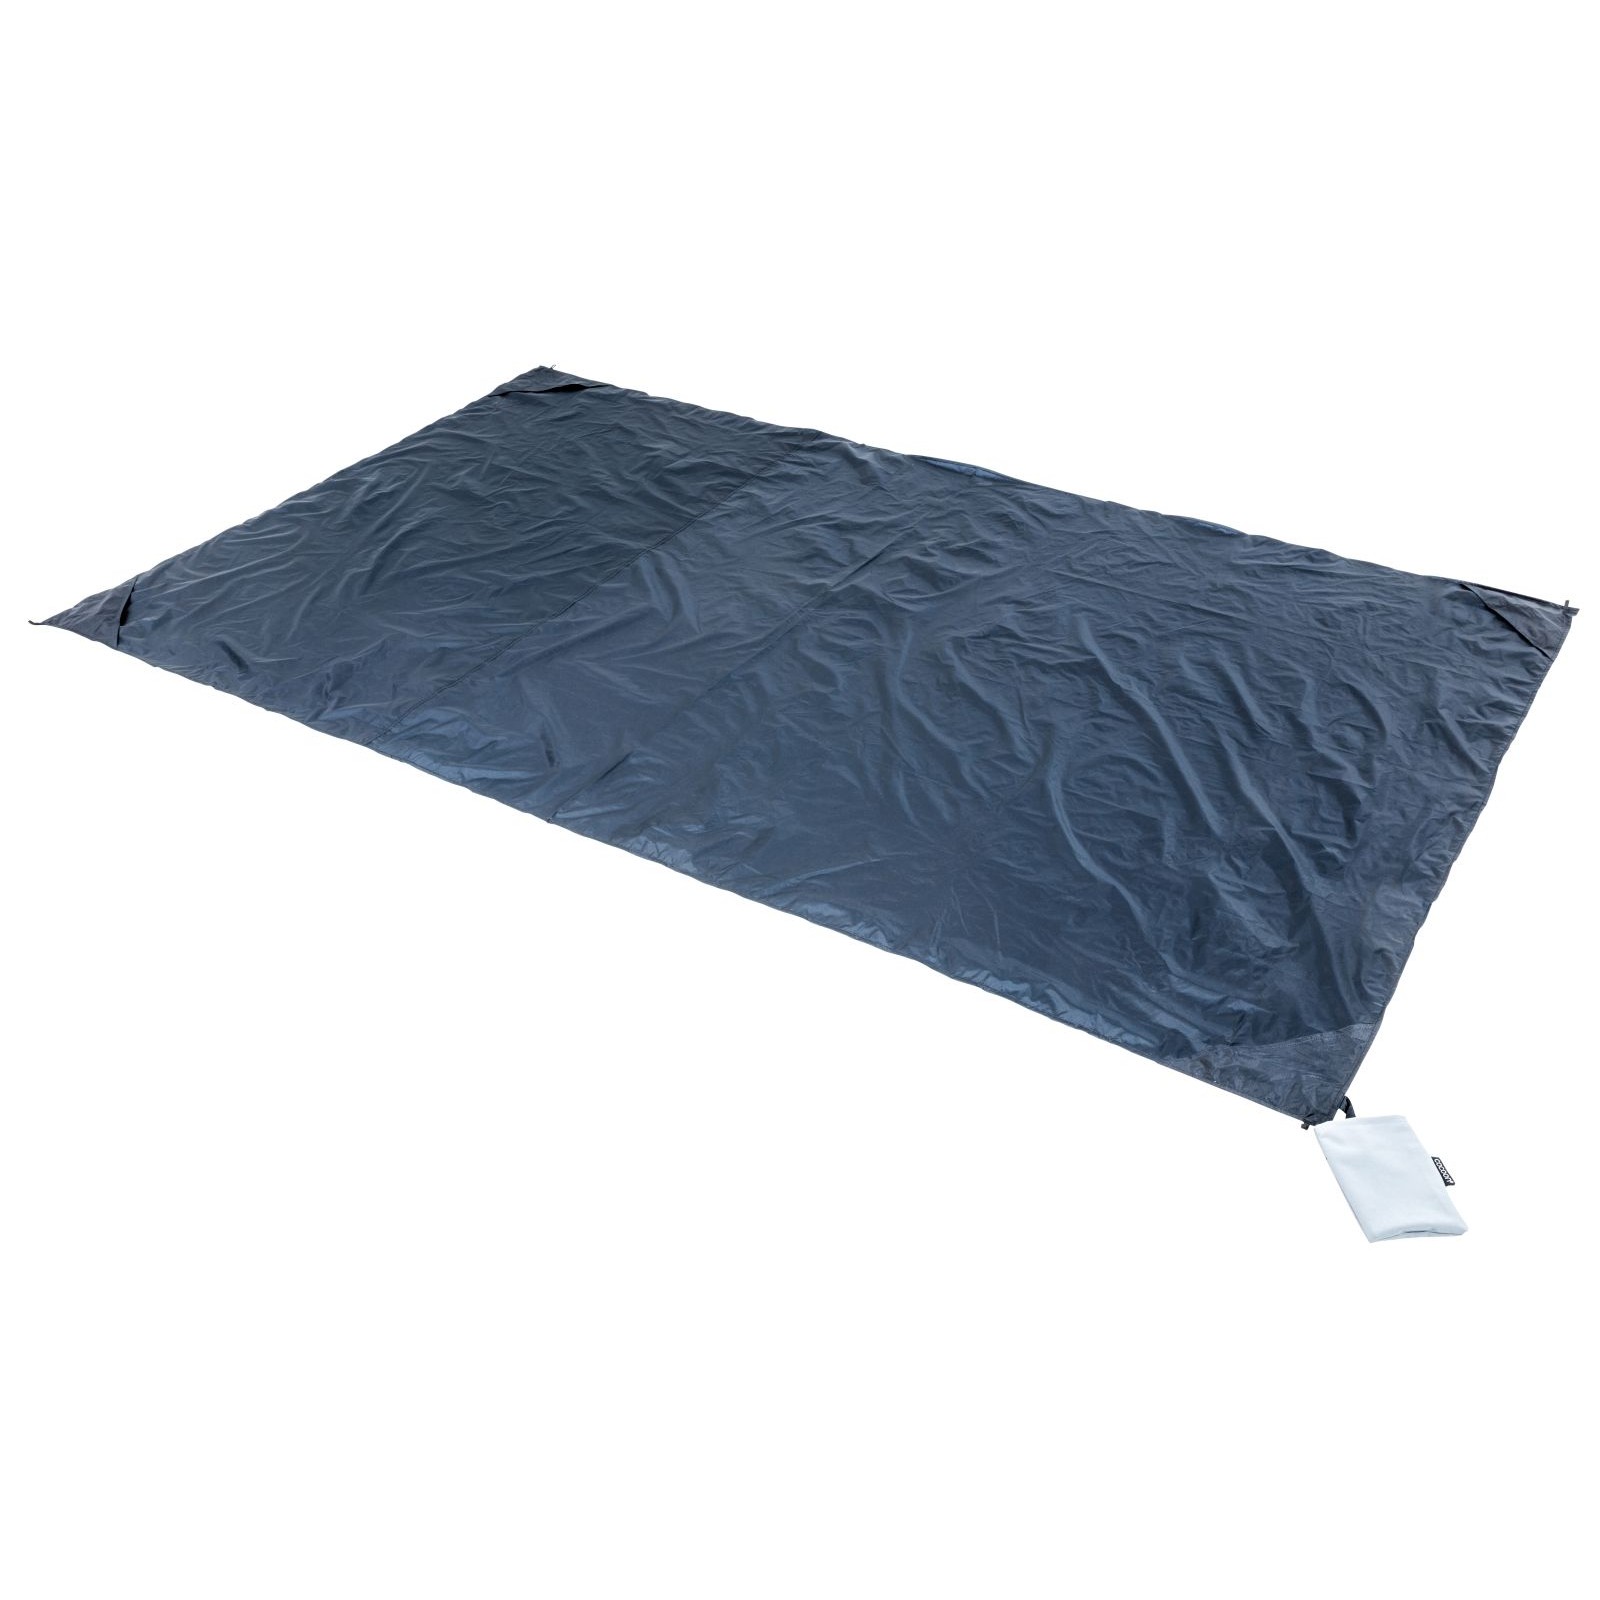 COCOON Picnic-, Outdoor- und Festival Blanket Tent - wasserdichte Decke  online kaufen